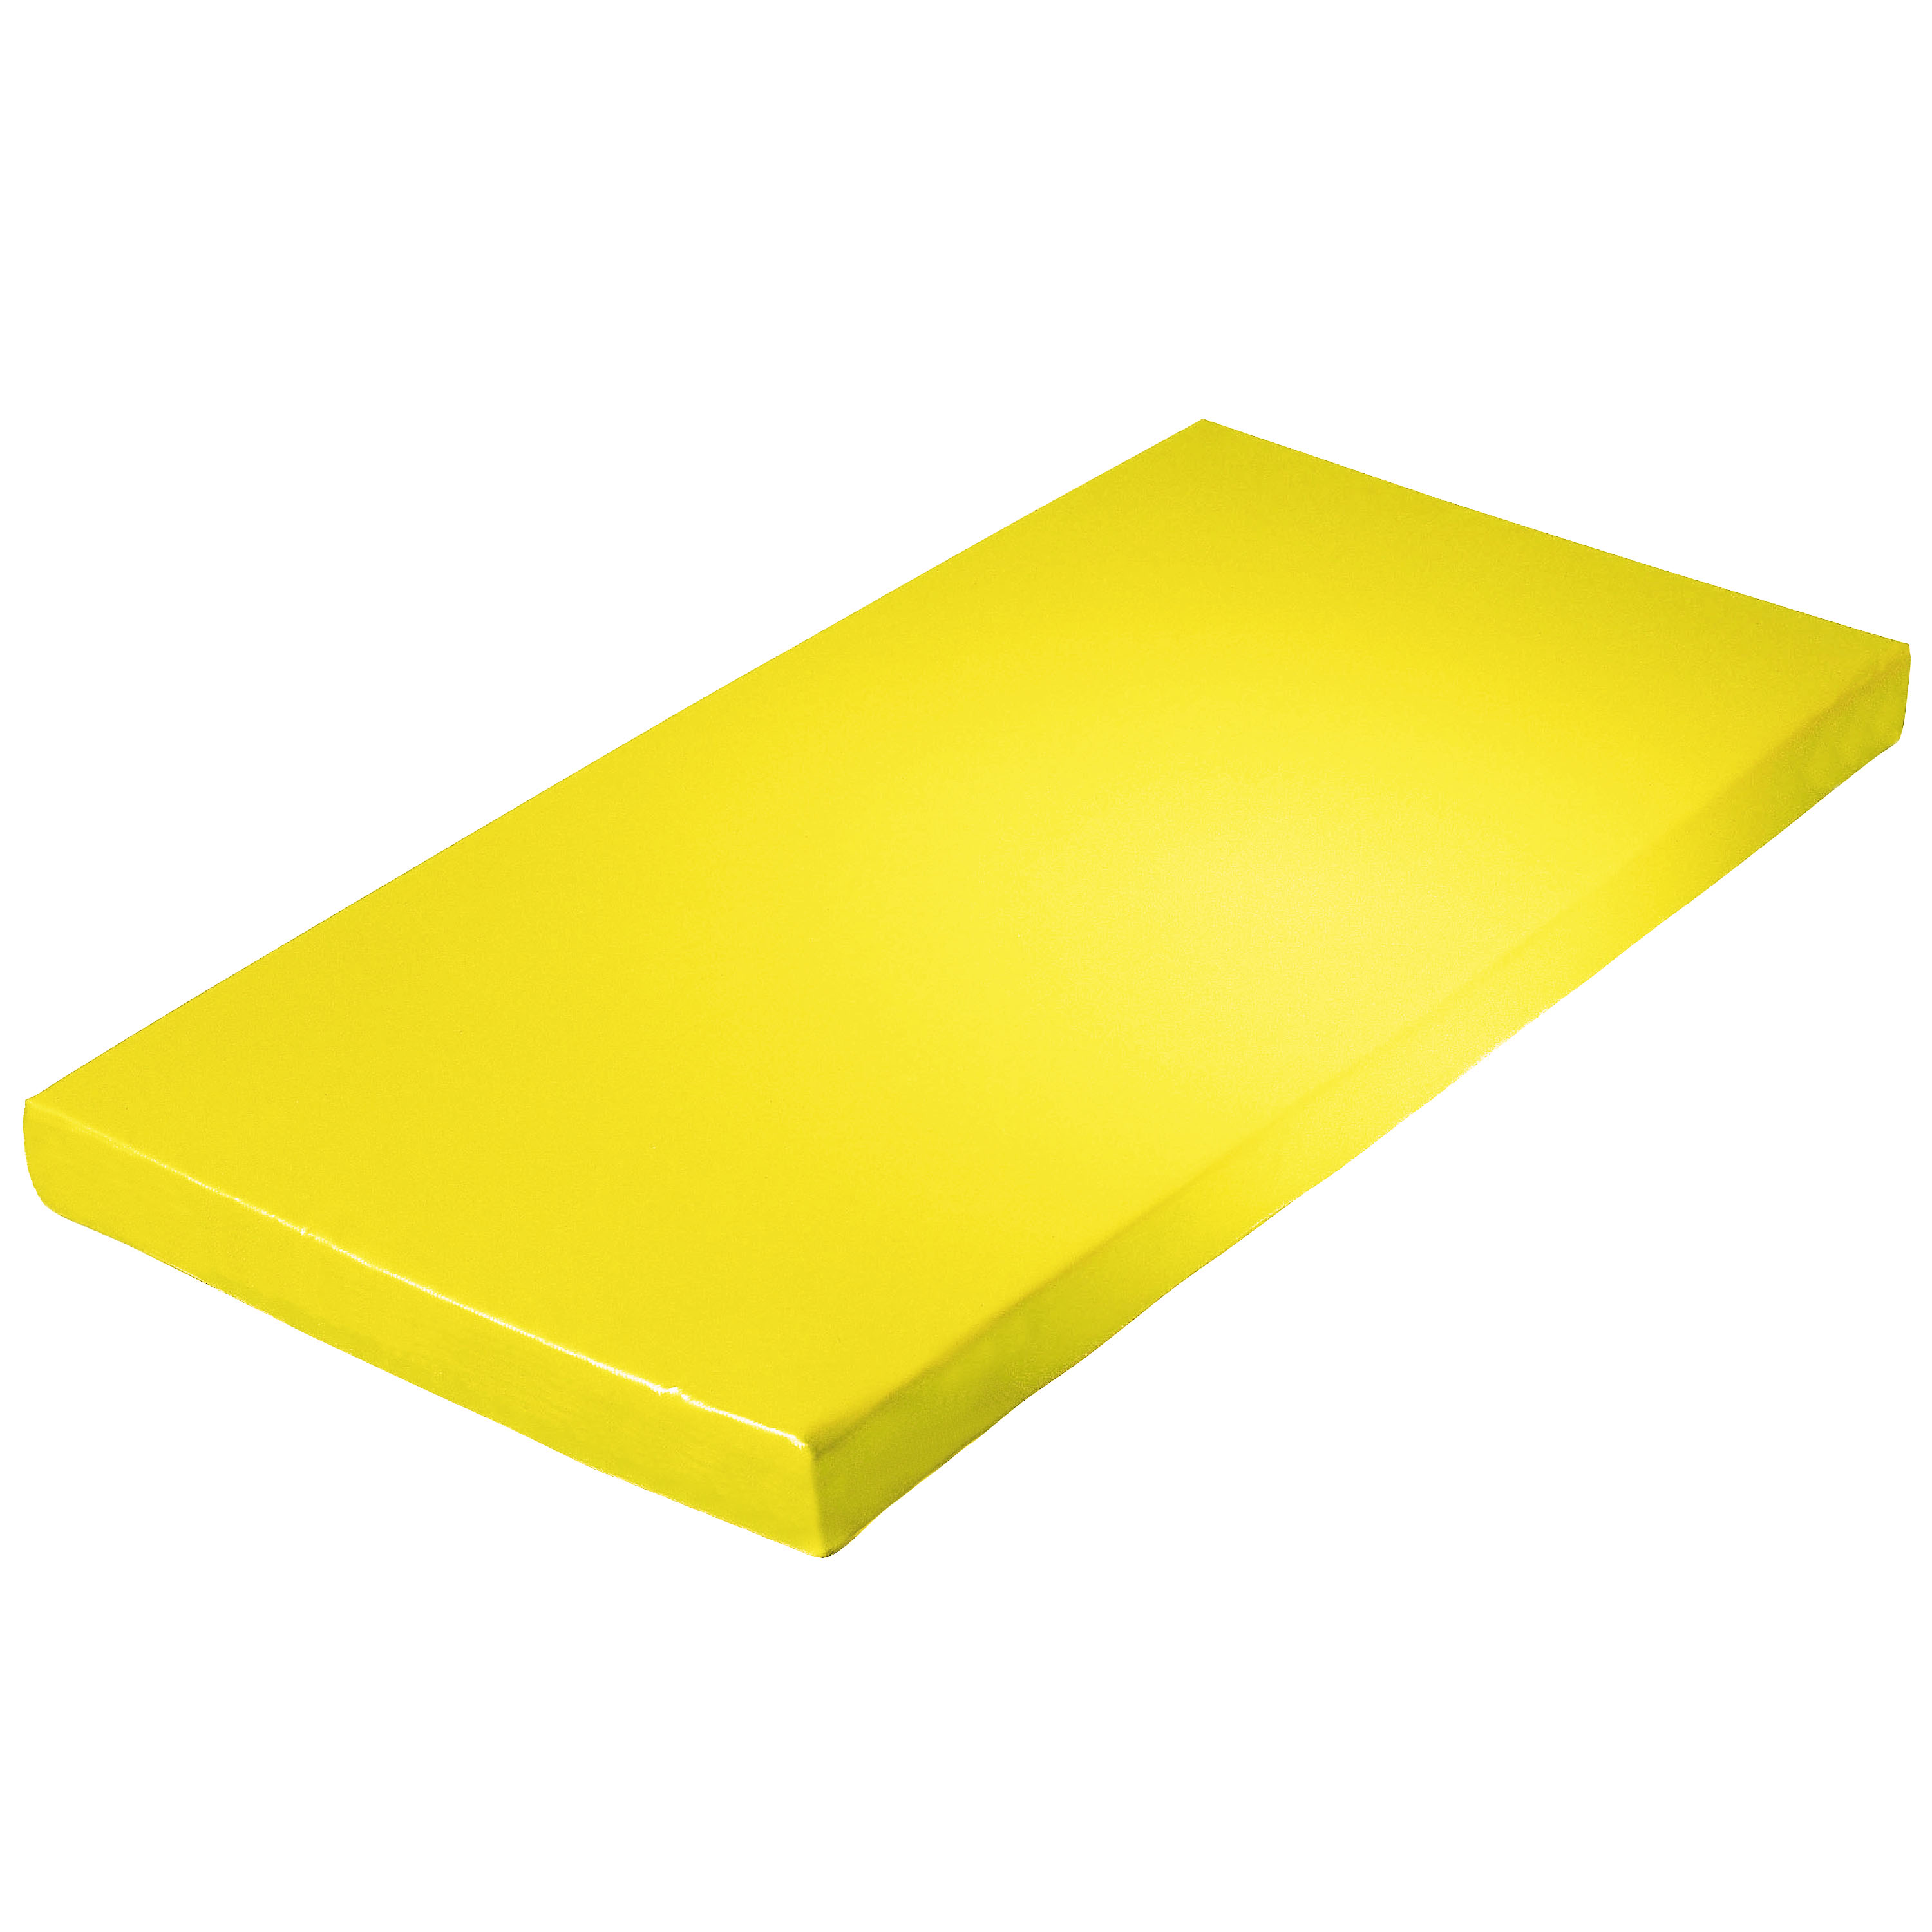 Super-Leichtturnmatte 200 x 100 x 6 cm, gelb